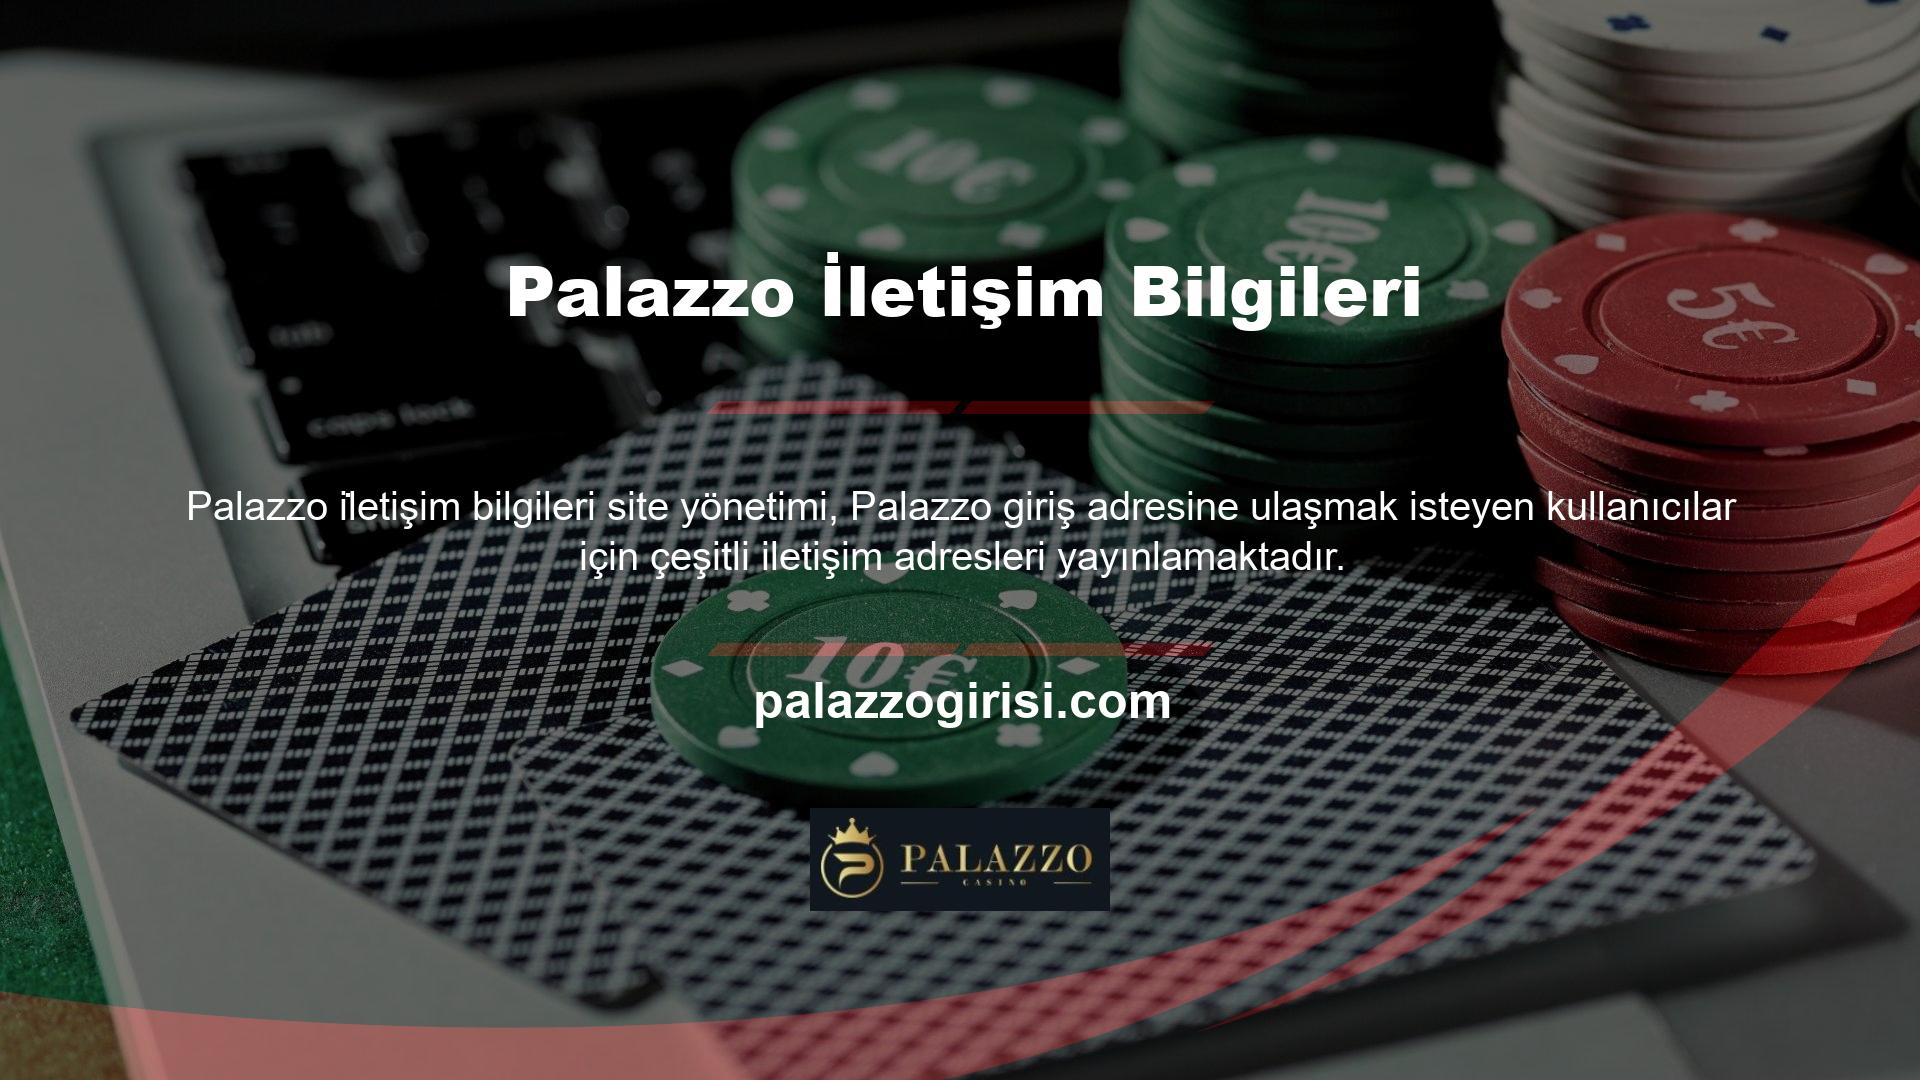 Palazzo mobil uygulaması Türkçe ve İngilizce olmak üzere beş dil seçeneğiyle dünyanın her yerindeki kullanıcılara hitap etmektedir